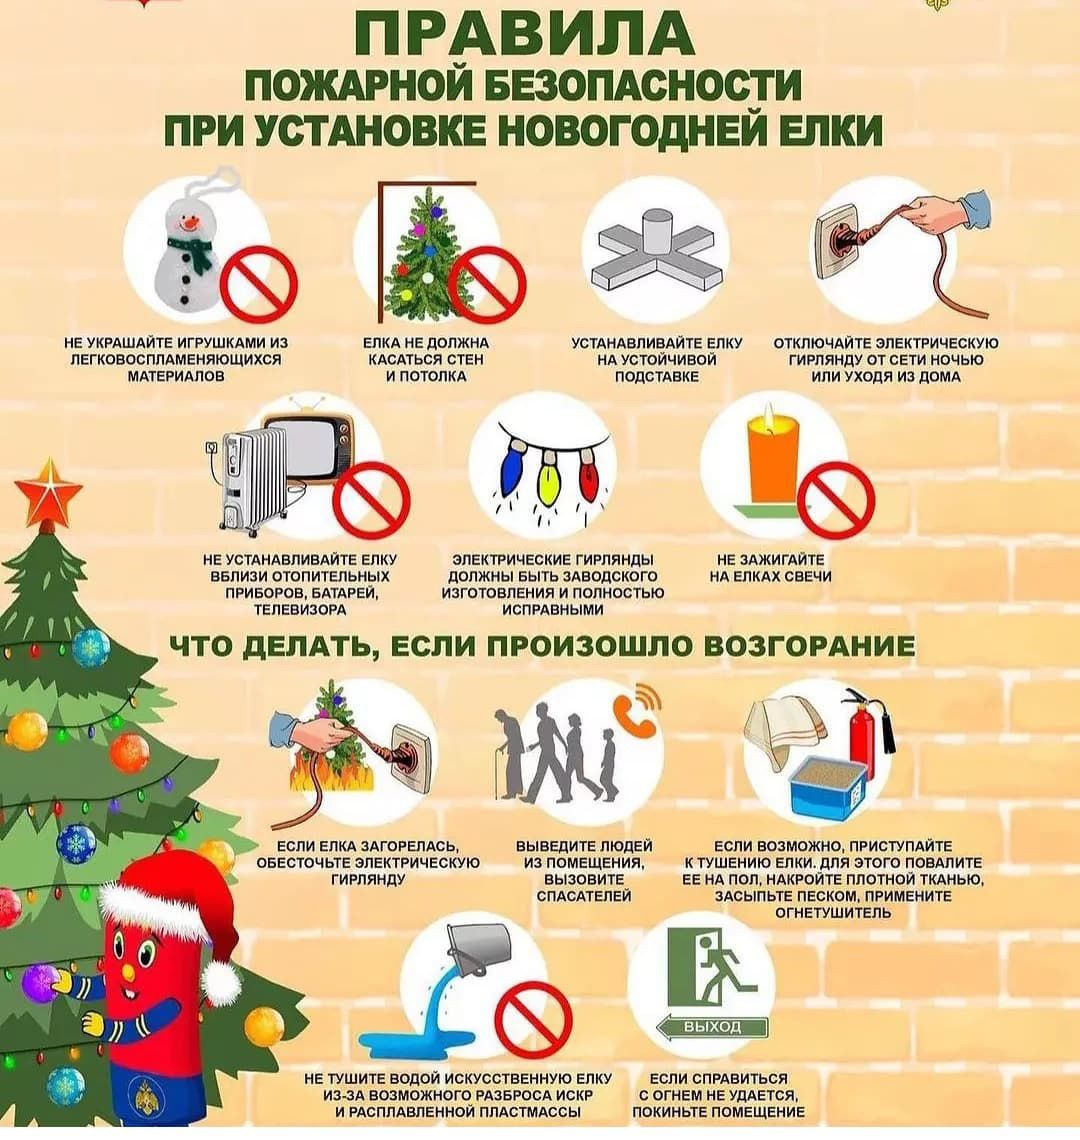 Информационные материалы о безопасности в период новогодних праздников.